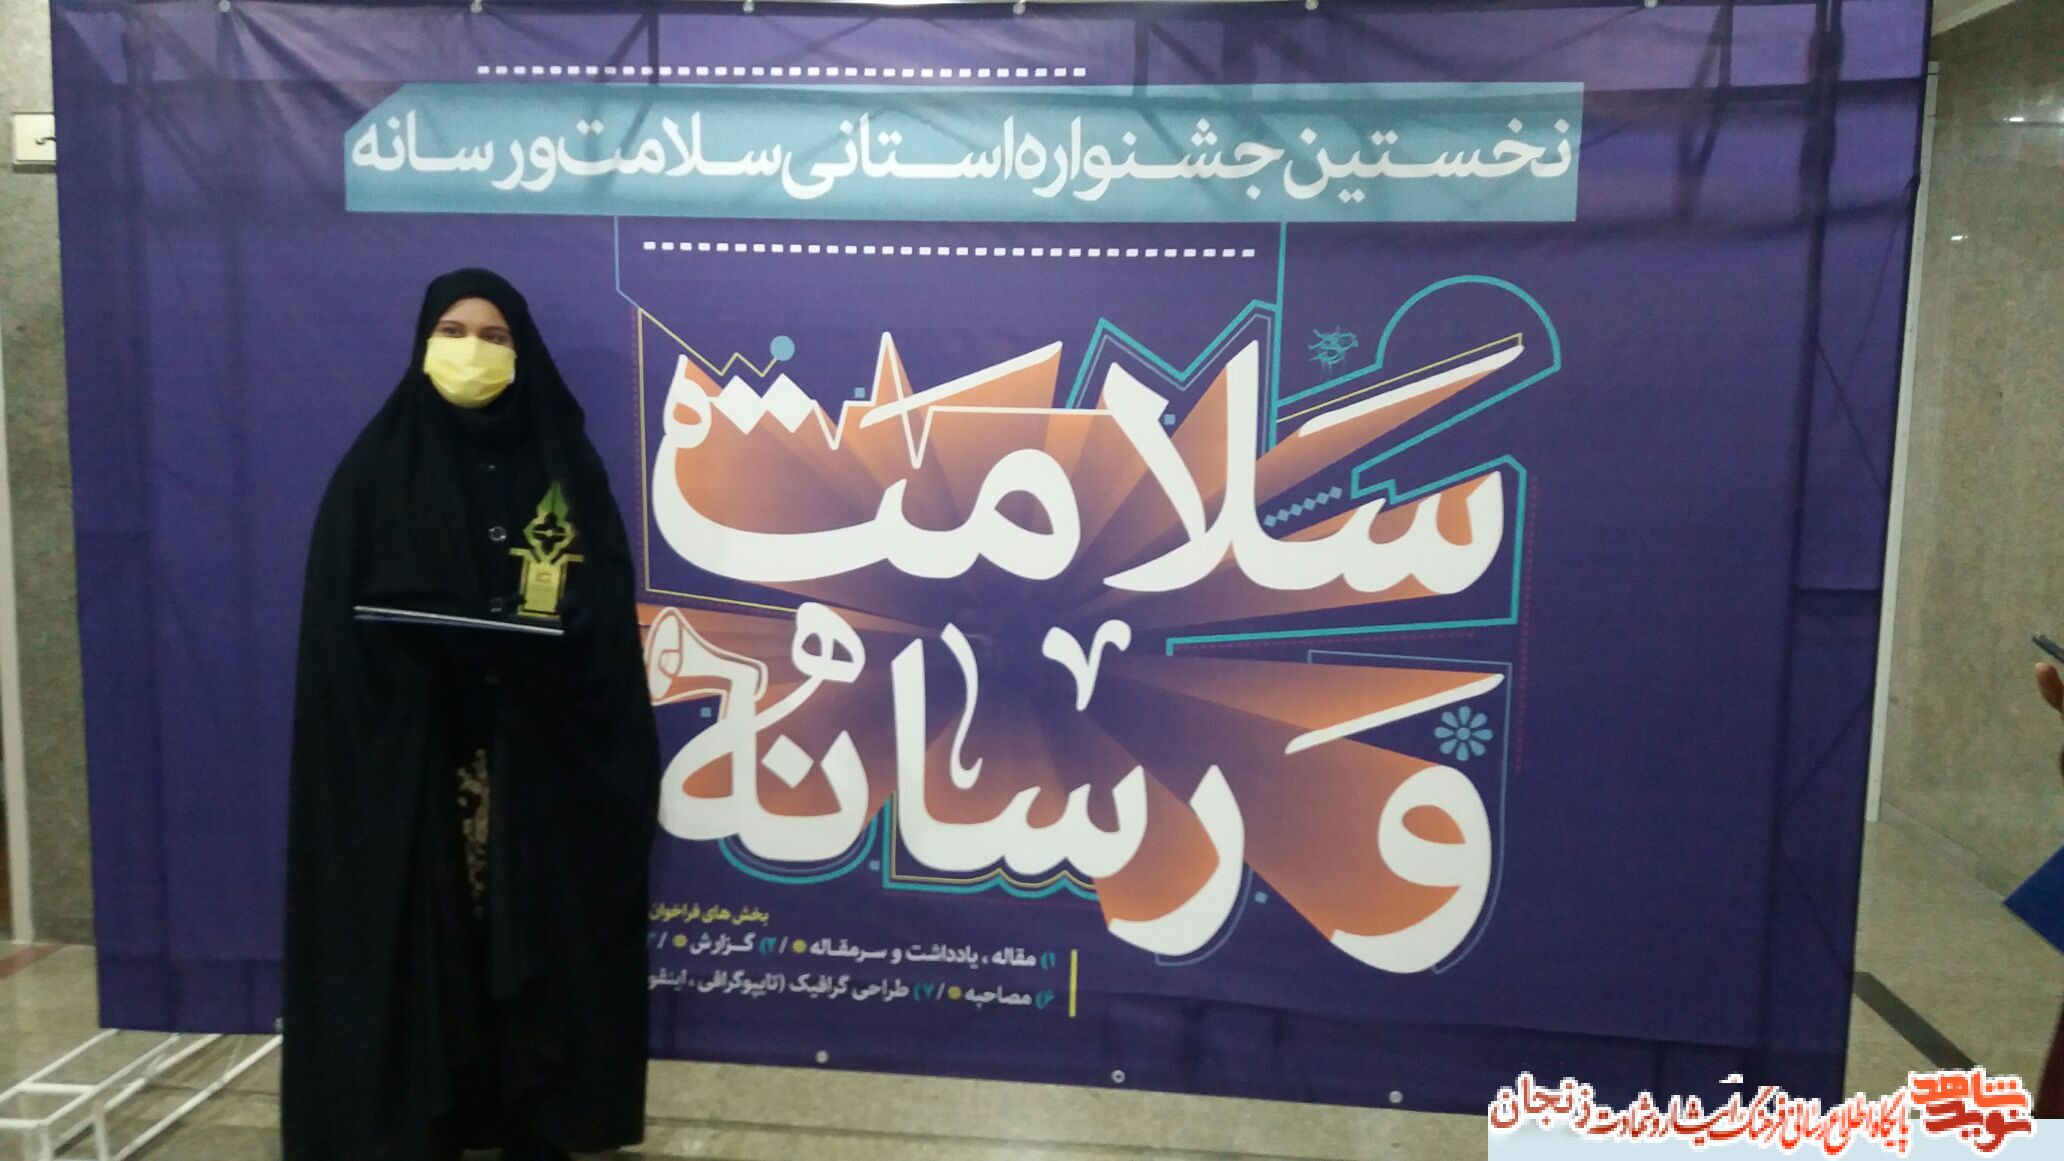 دبیر نوید شاهد زنجان در جشنواره سلامت و رسانه خوش درخشید